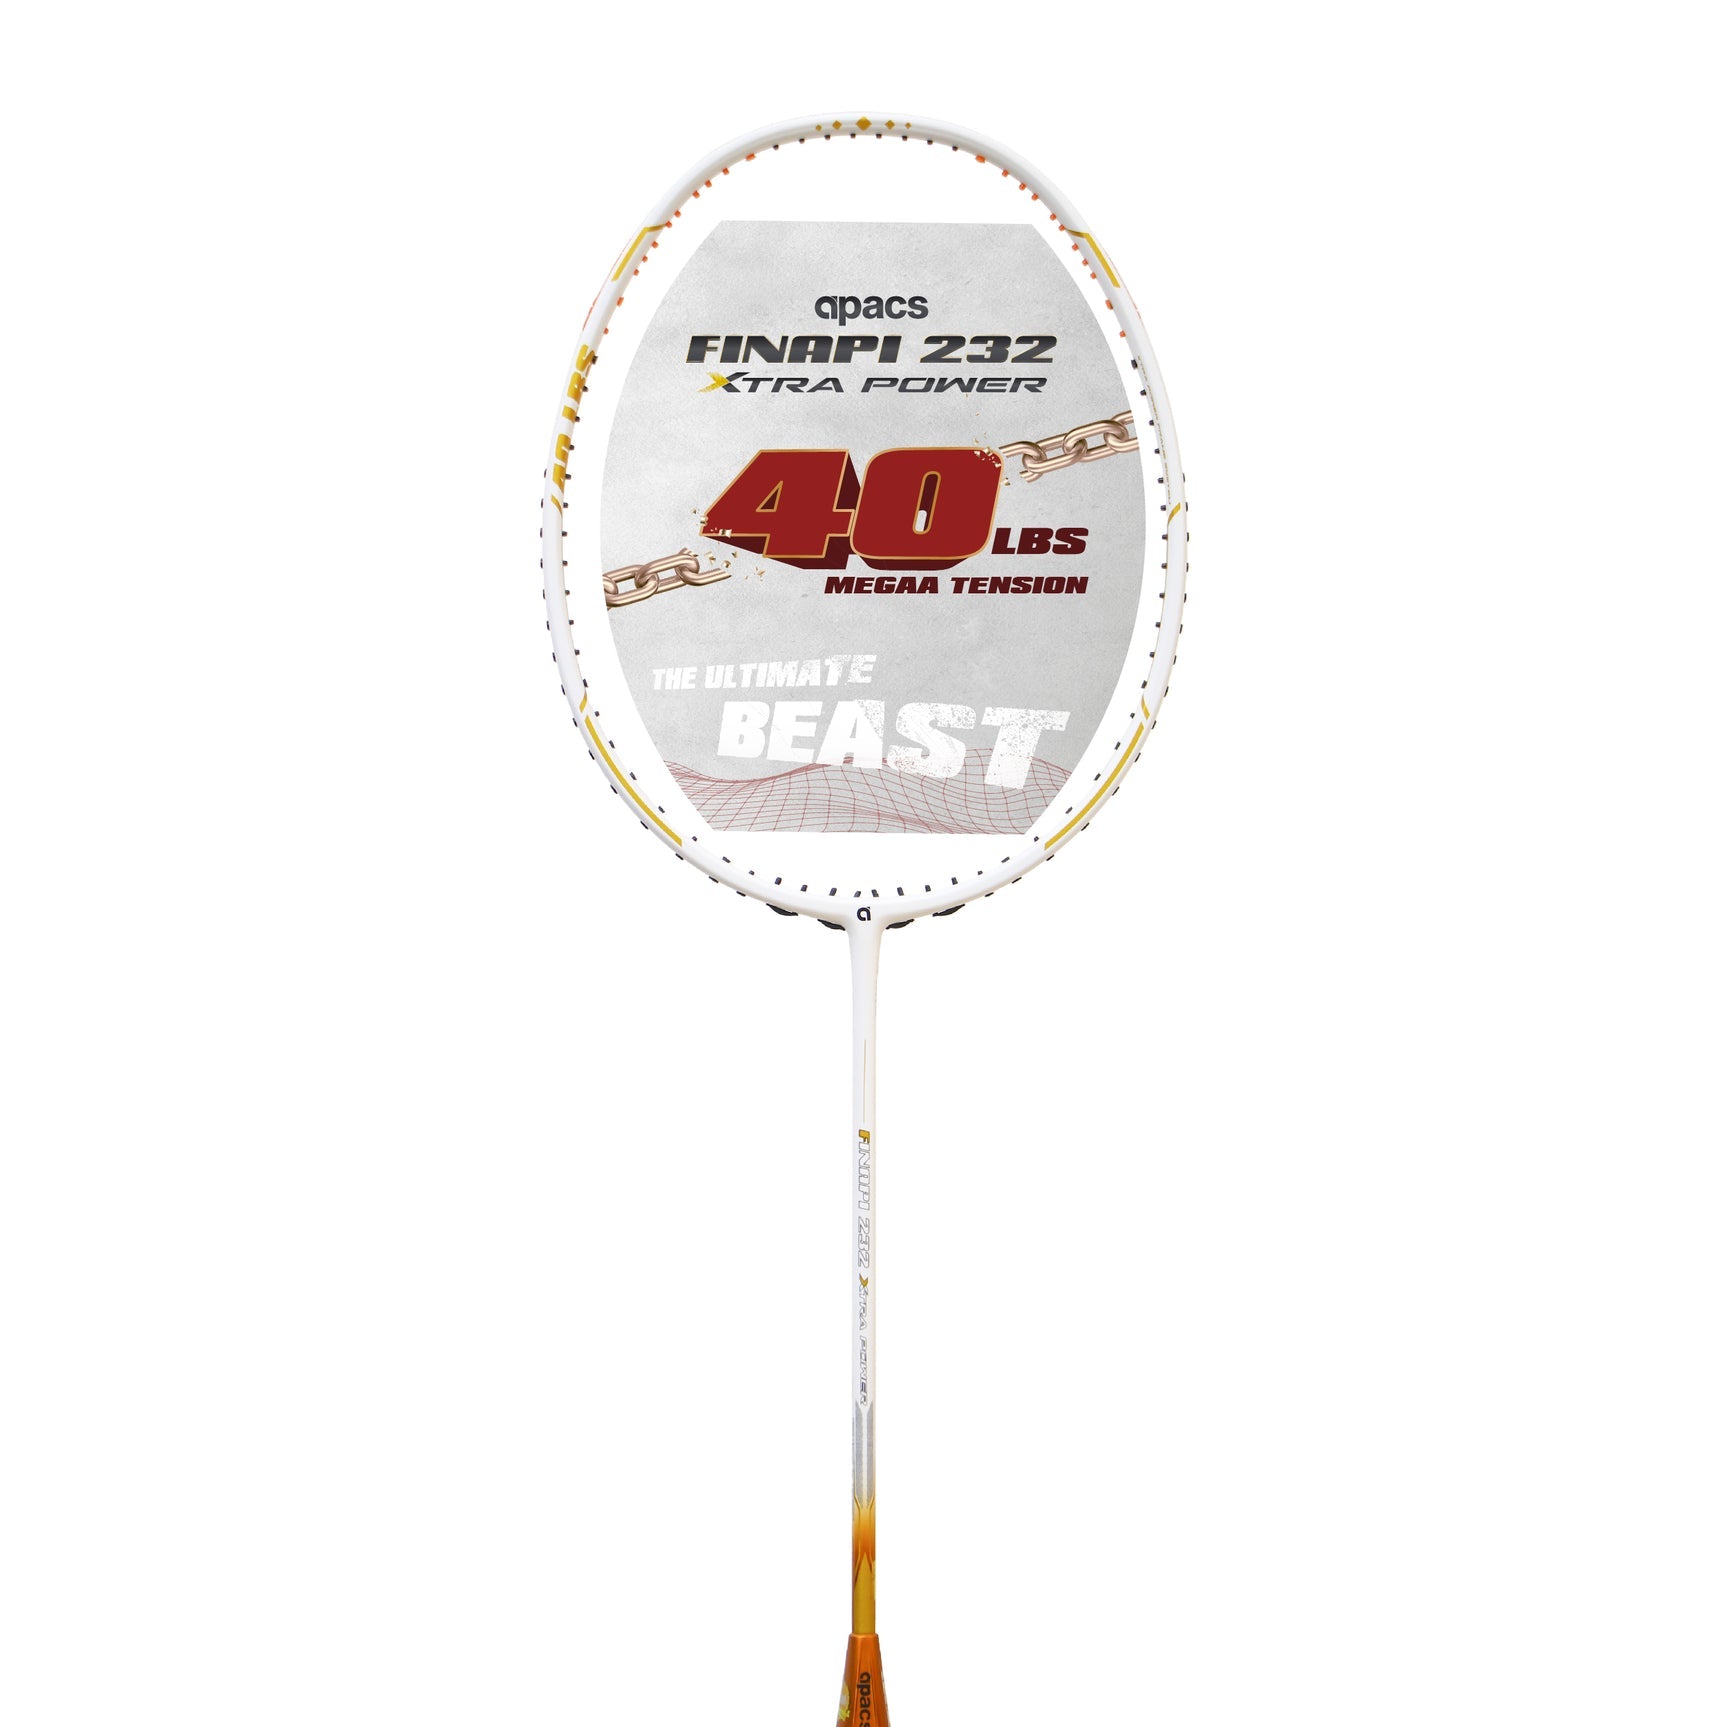 APACS Finapi 232 Xtra Power Badminton Racket